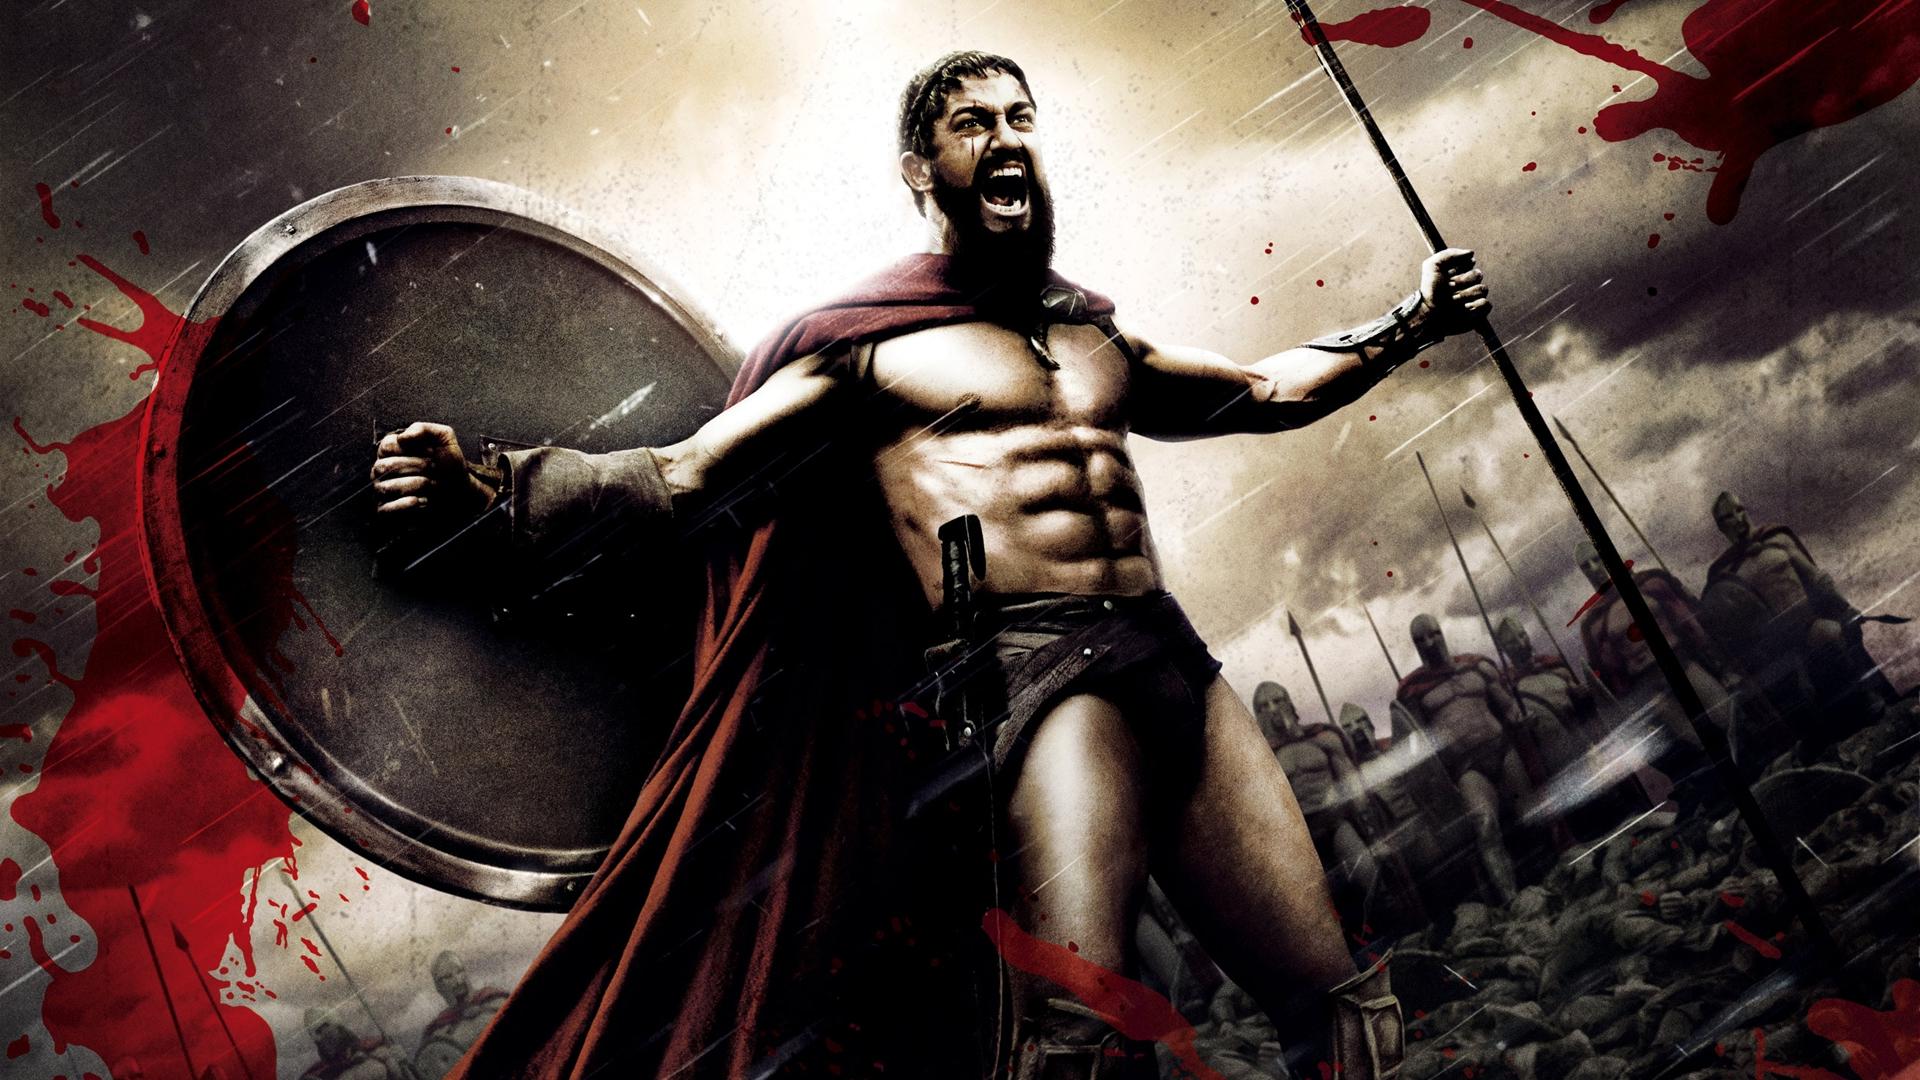 300 Spartan Warrior Rage Strong Gerard Butler #iF